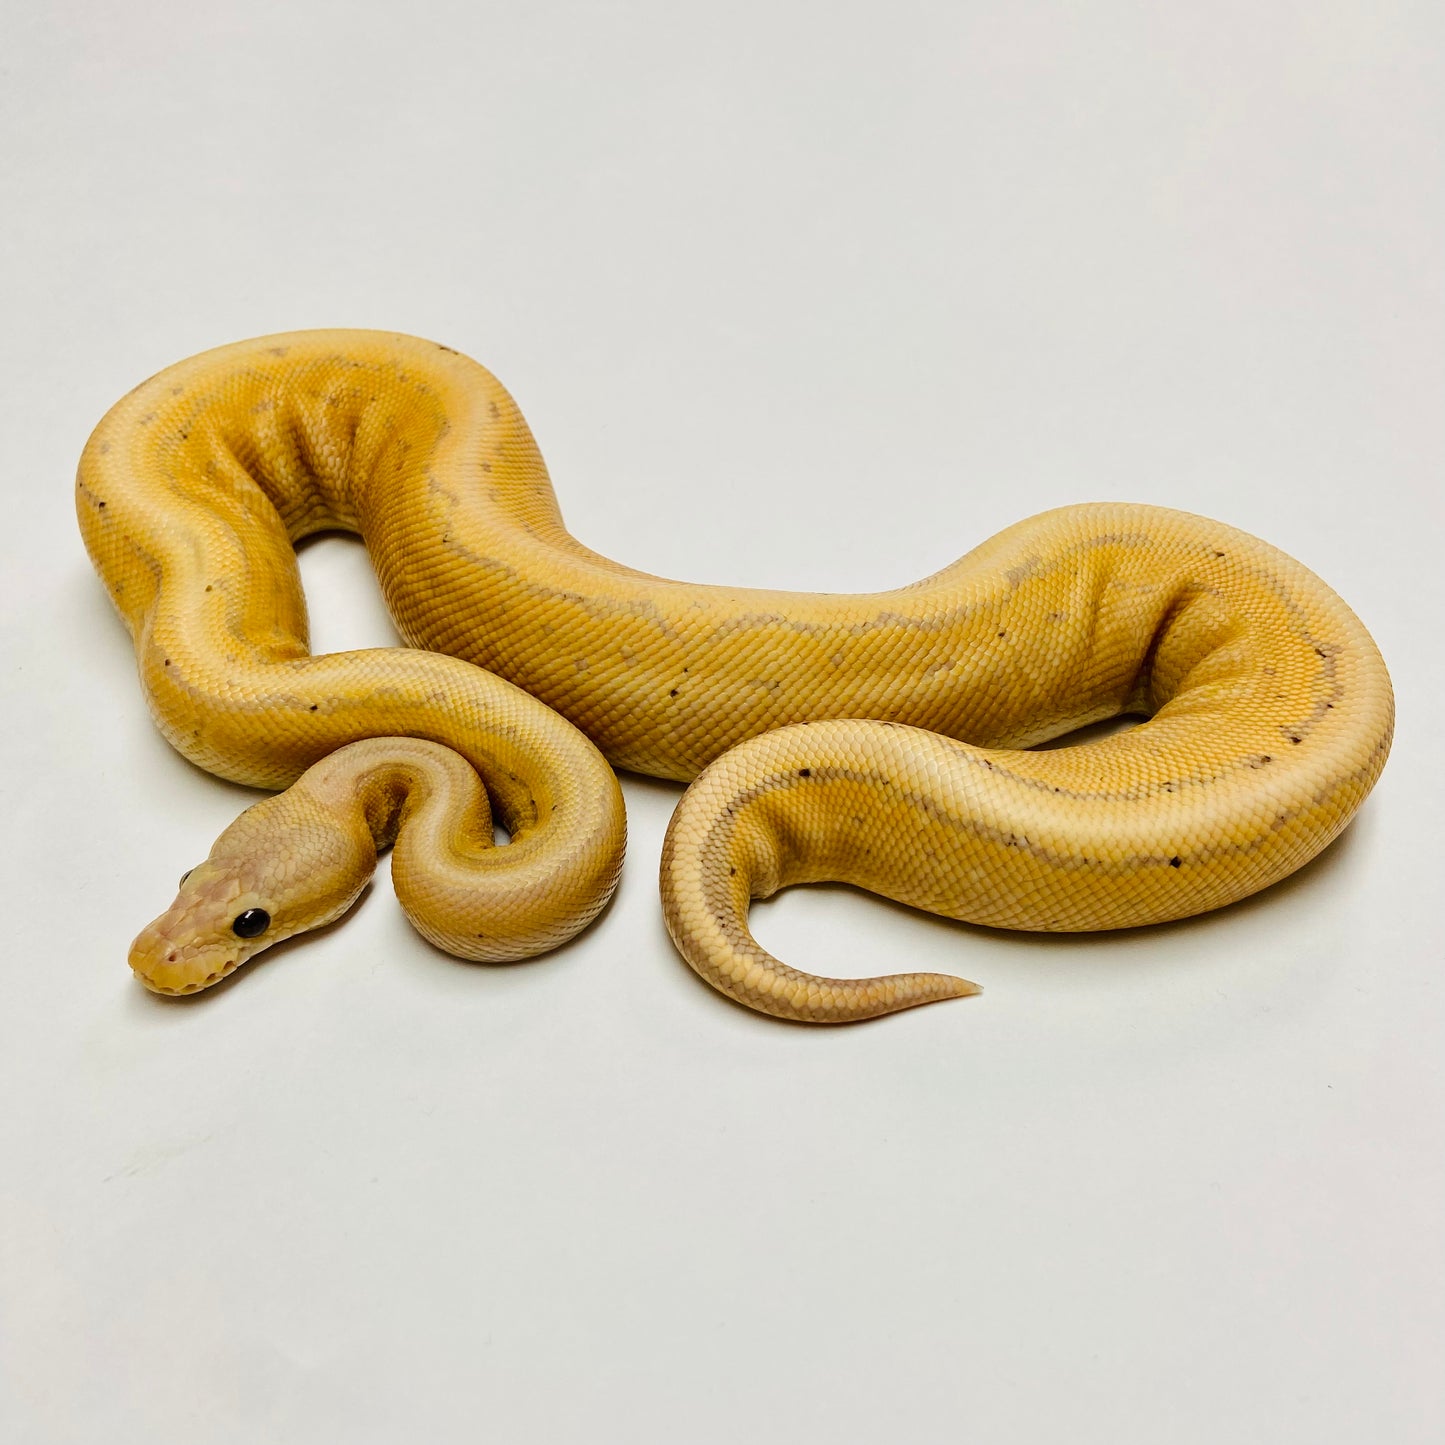 Banana Enchi Cinnamon Pinstripe Ball Python Male #2022M02